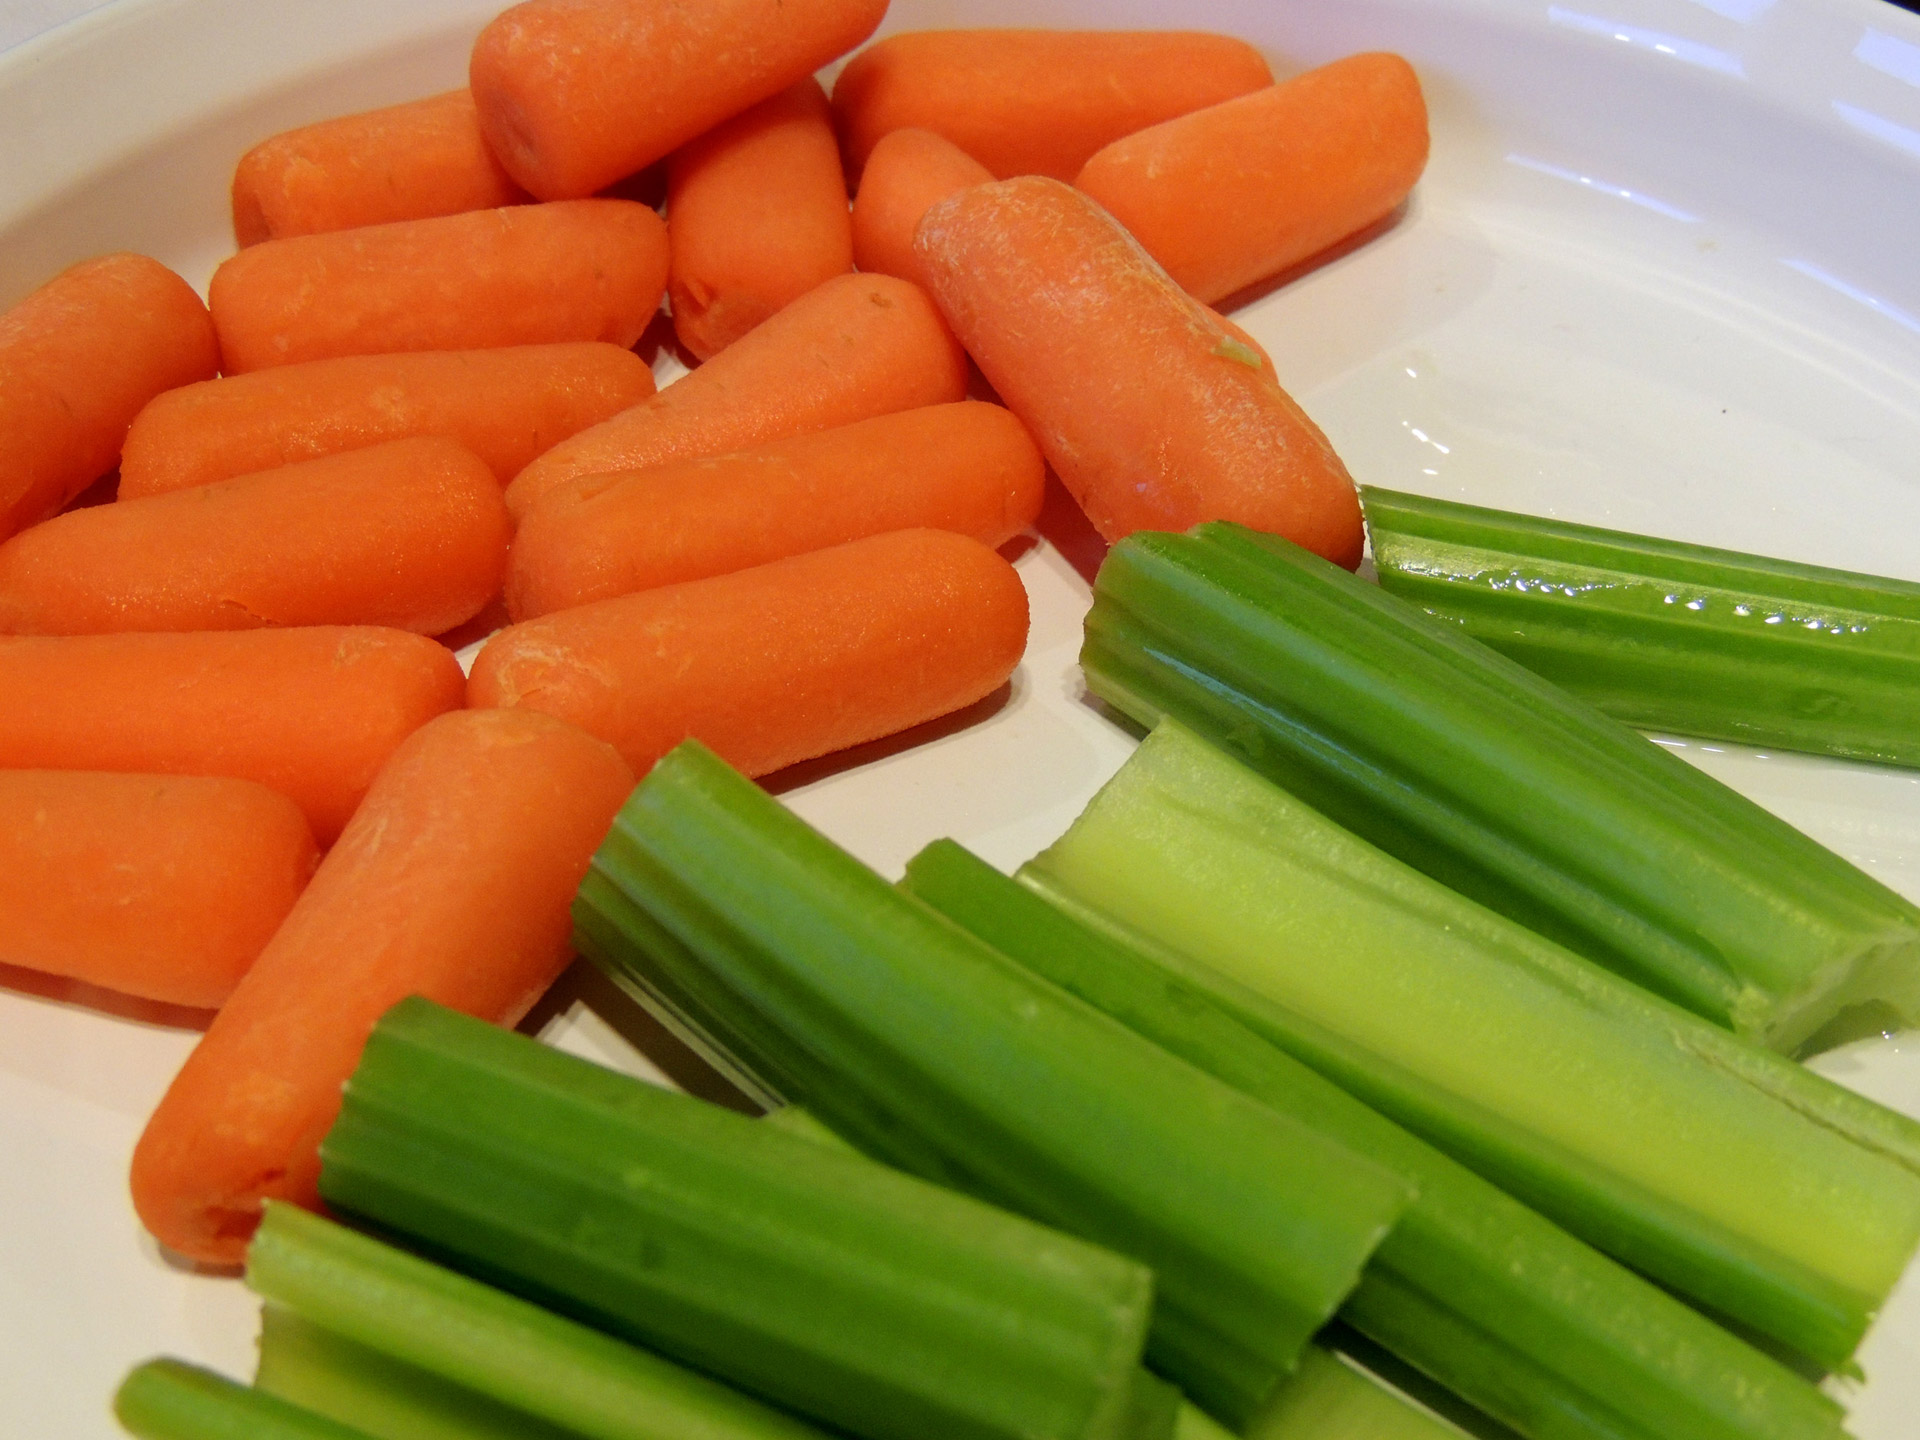 Carrots & Celery